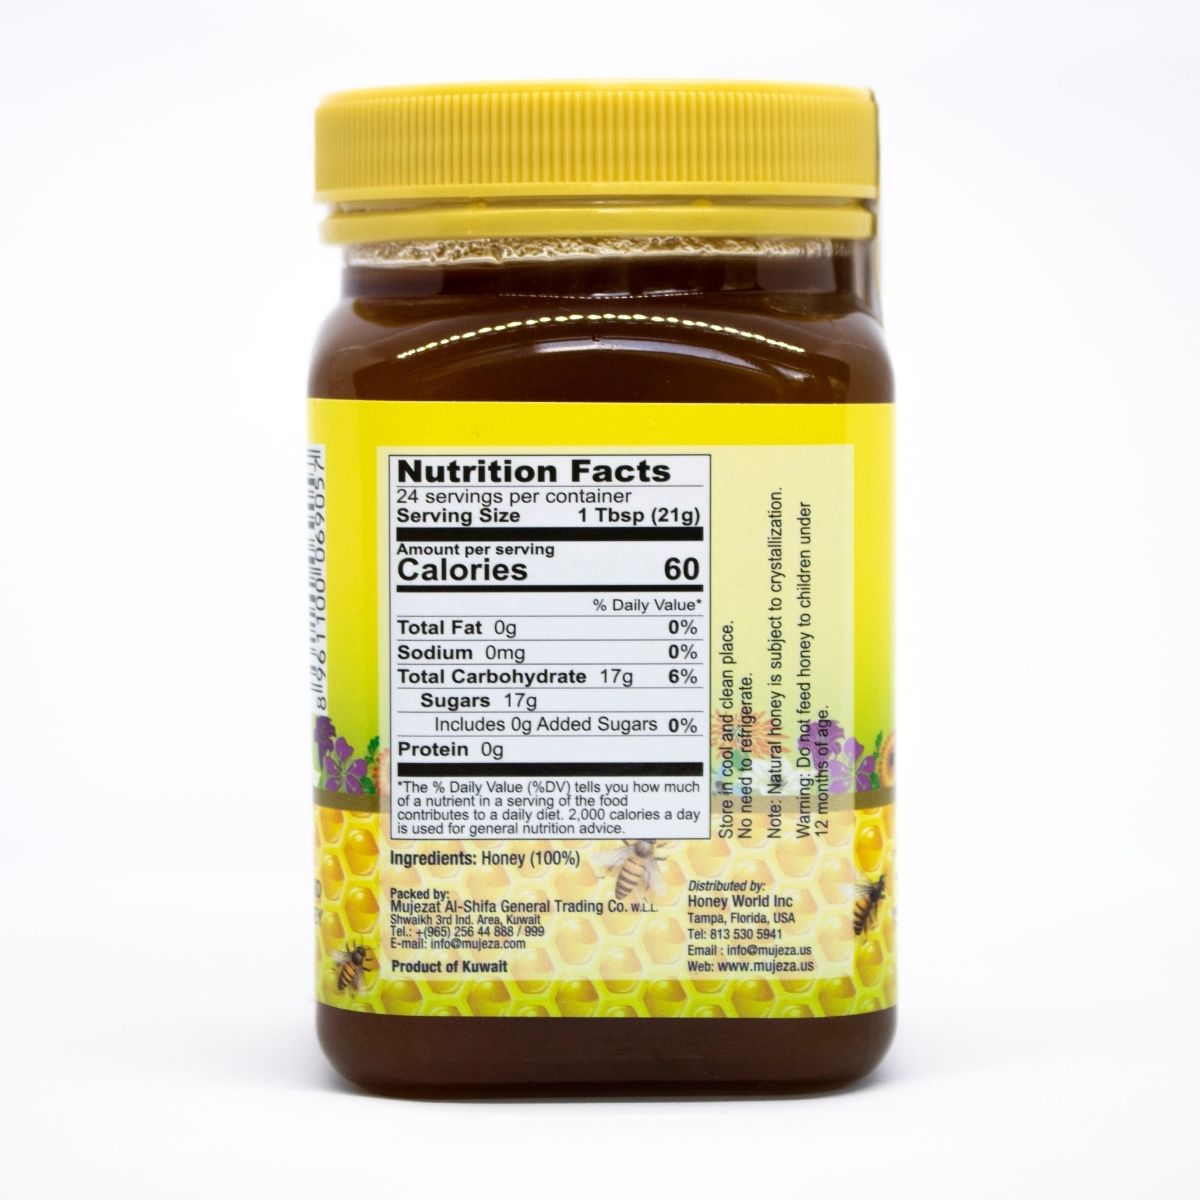 Ingredients of Mujeza Pure Wildflower Honey (500 g) - عسل الزهور البرية الصافي - Mujeza Honey